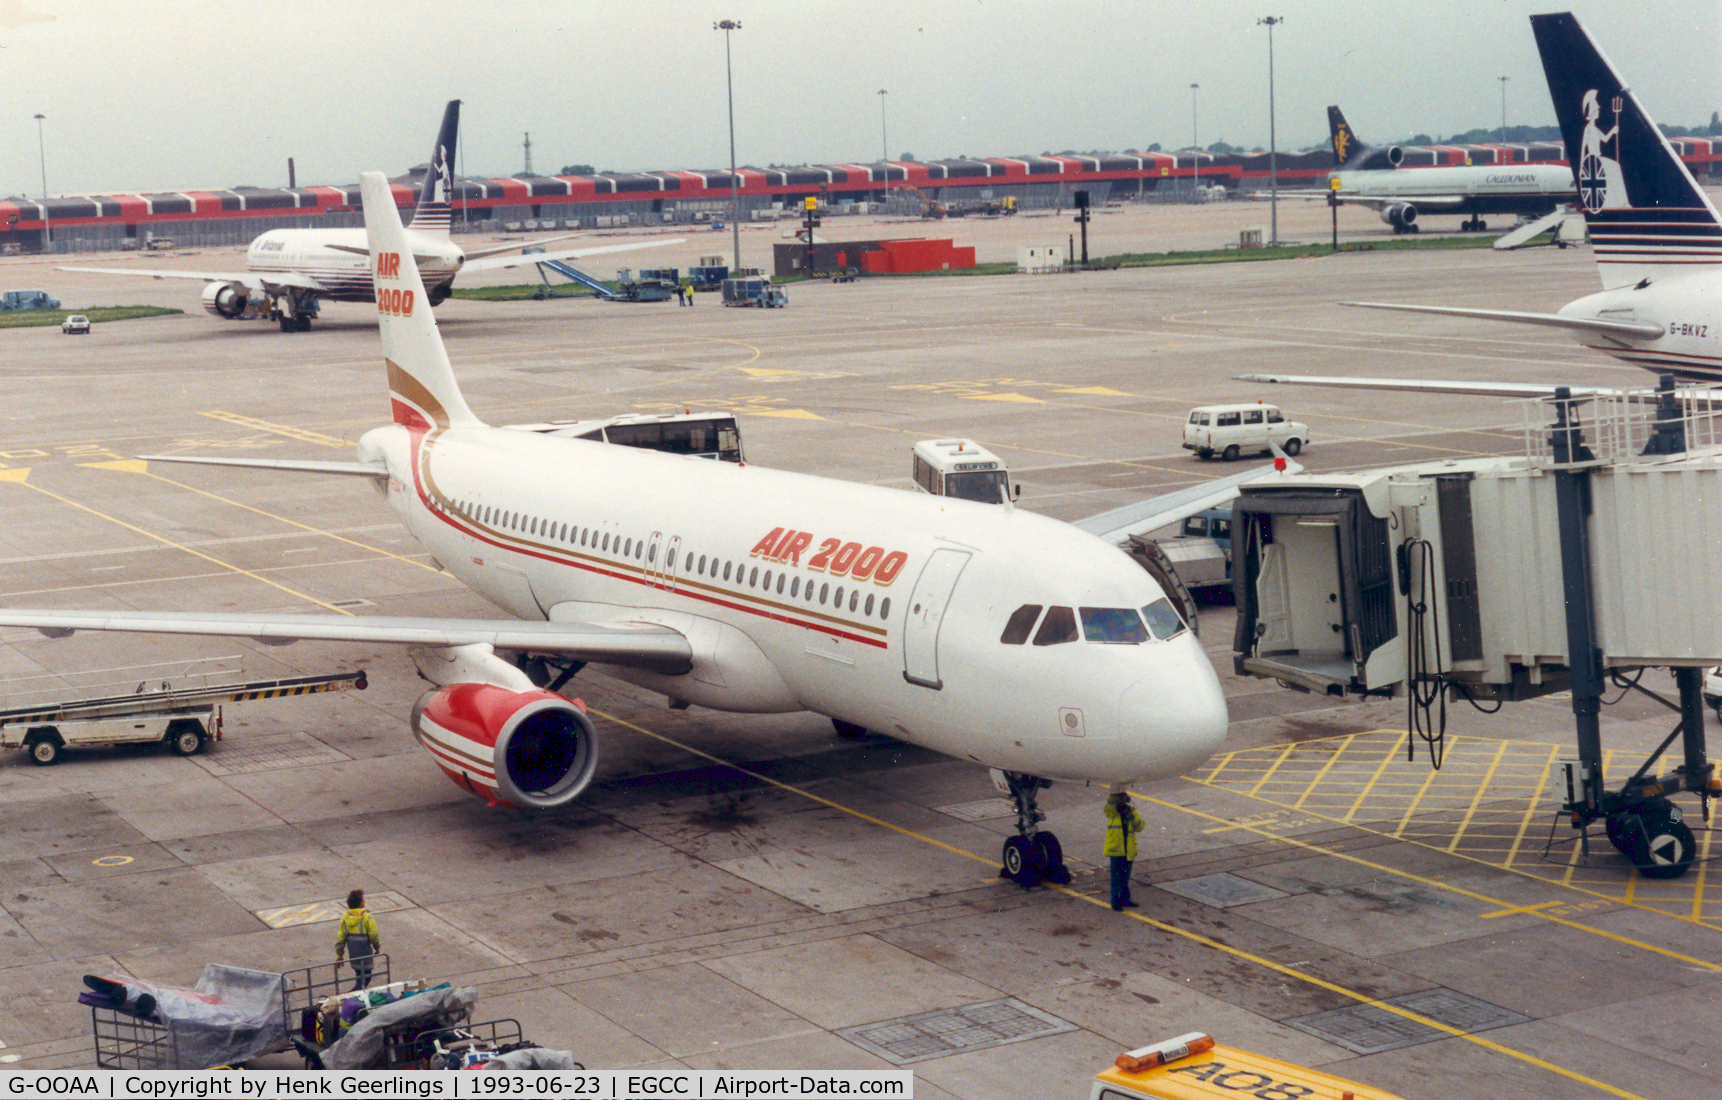 G-OOAA, 1992 Airbus A320-231 C/N 291, Air 2000